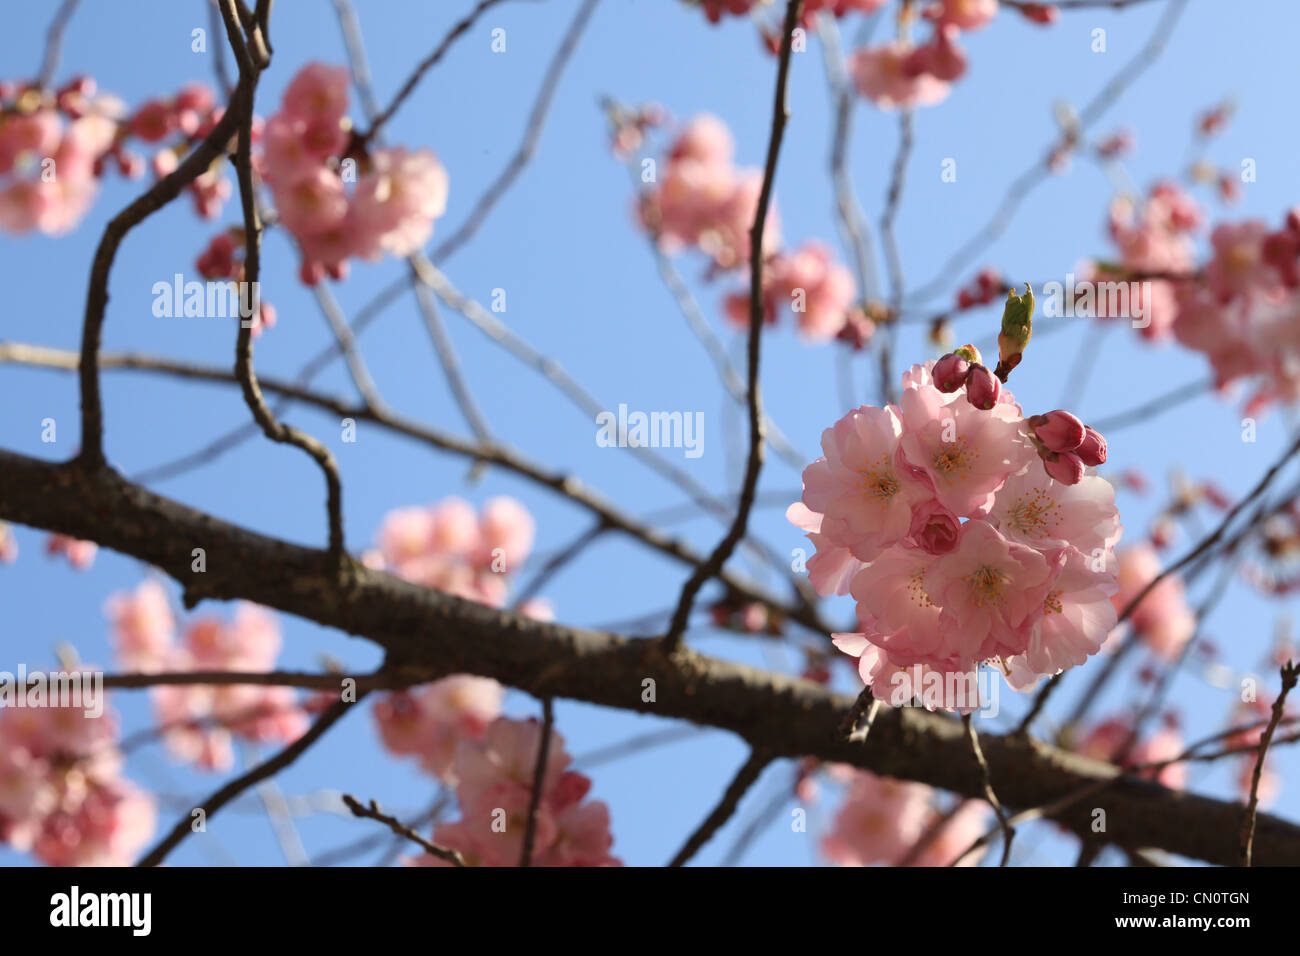 Closeup of cherry blossom Cerasus vulgaris against a blue sky in springtime Stock Photo